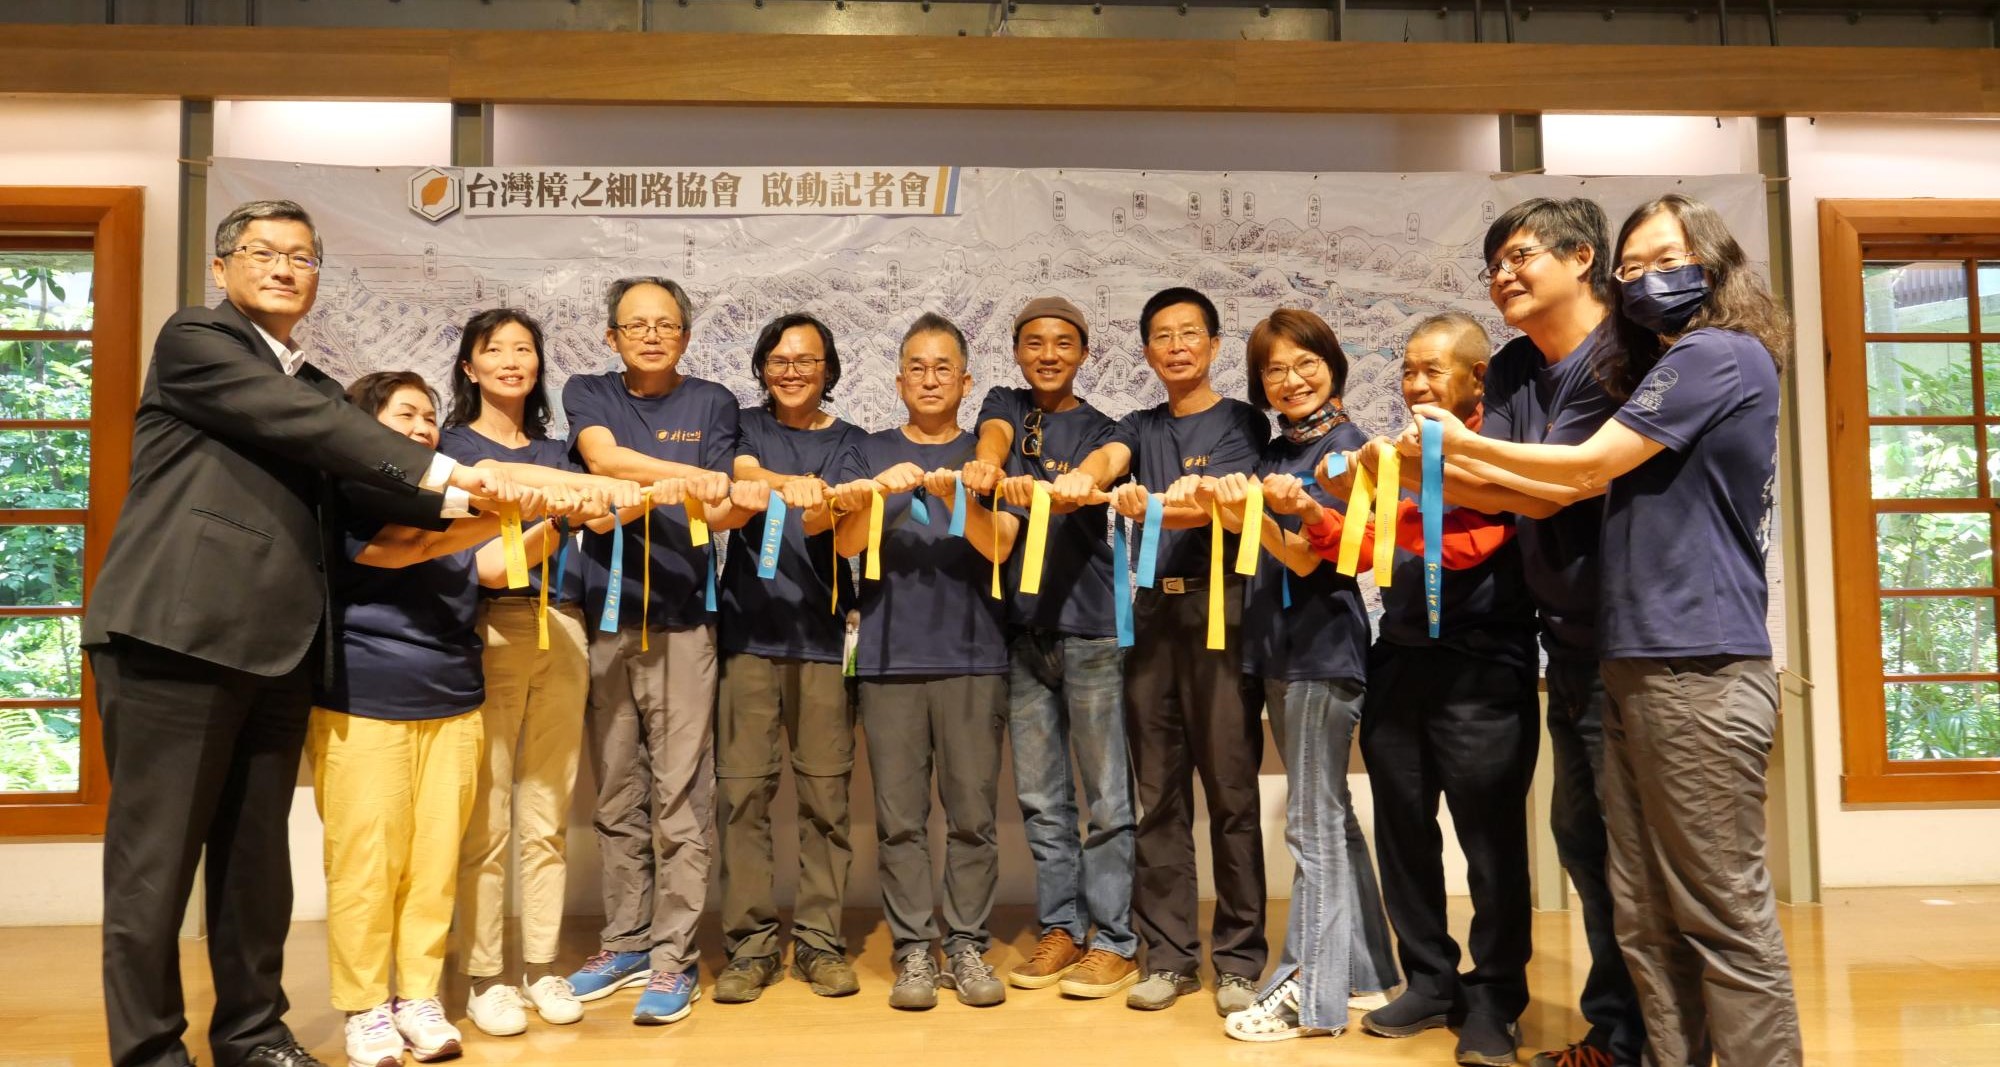 【遇見美好人生】一群人一起走長路—台灣樟之細路協會啟動成立，公私協力永續經營國家綠道